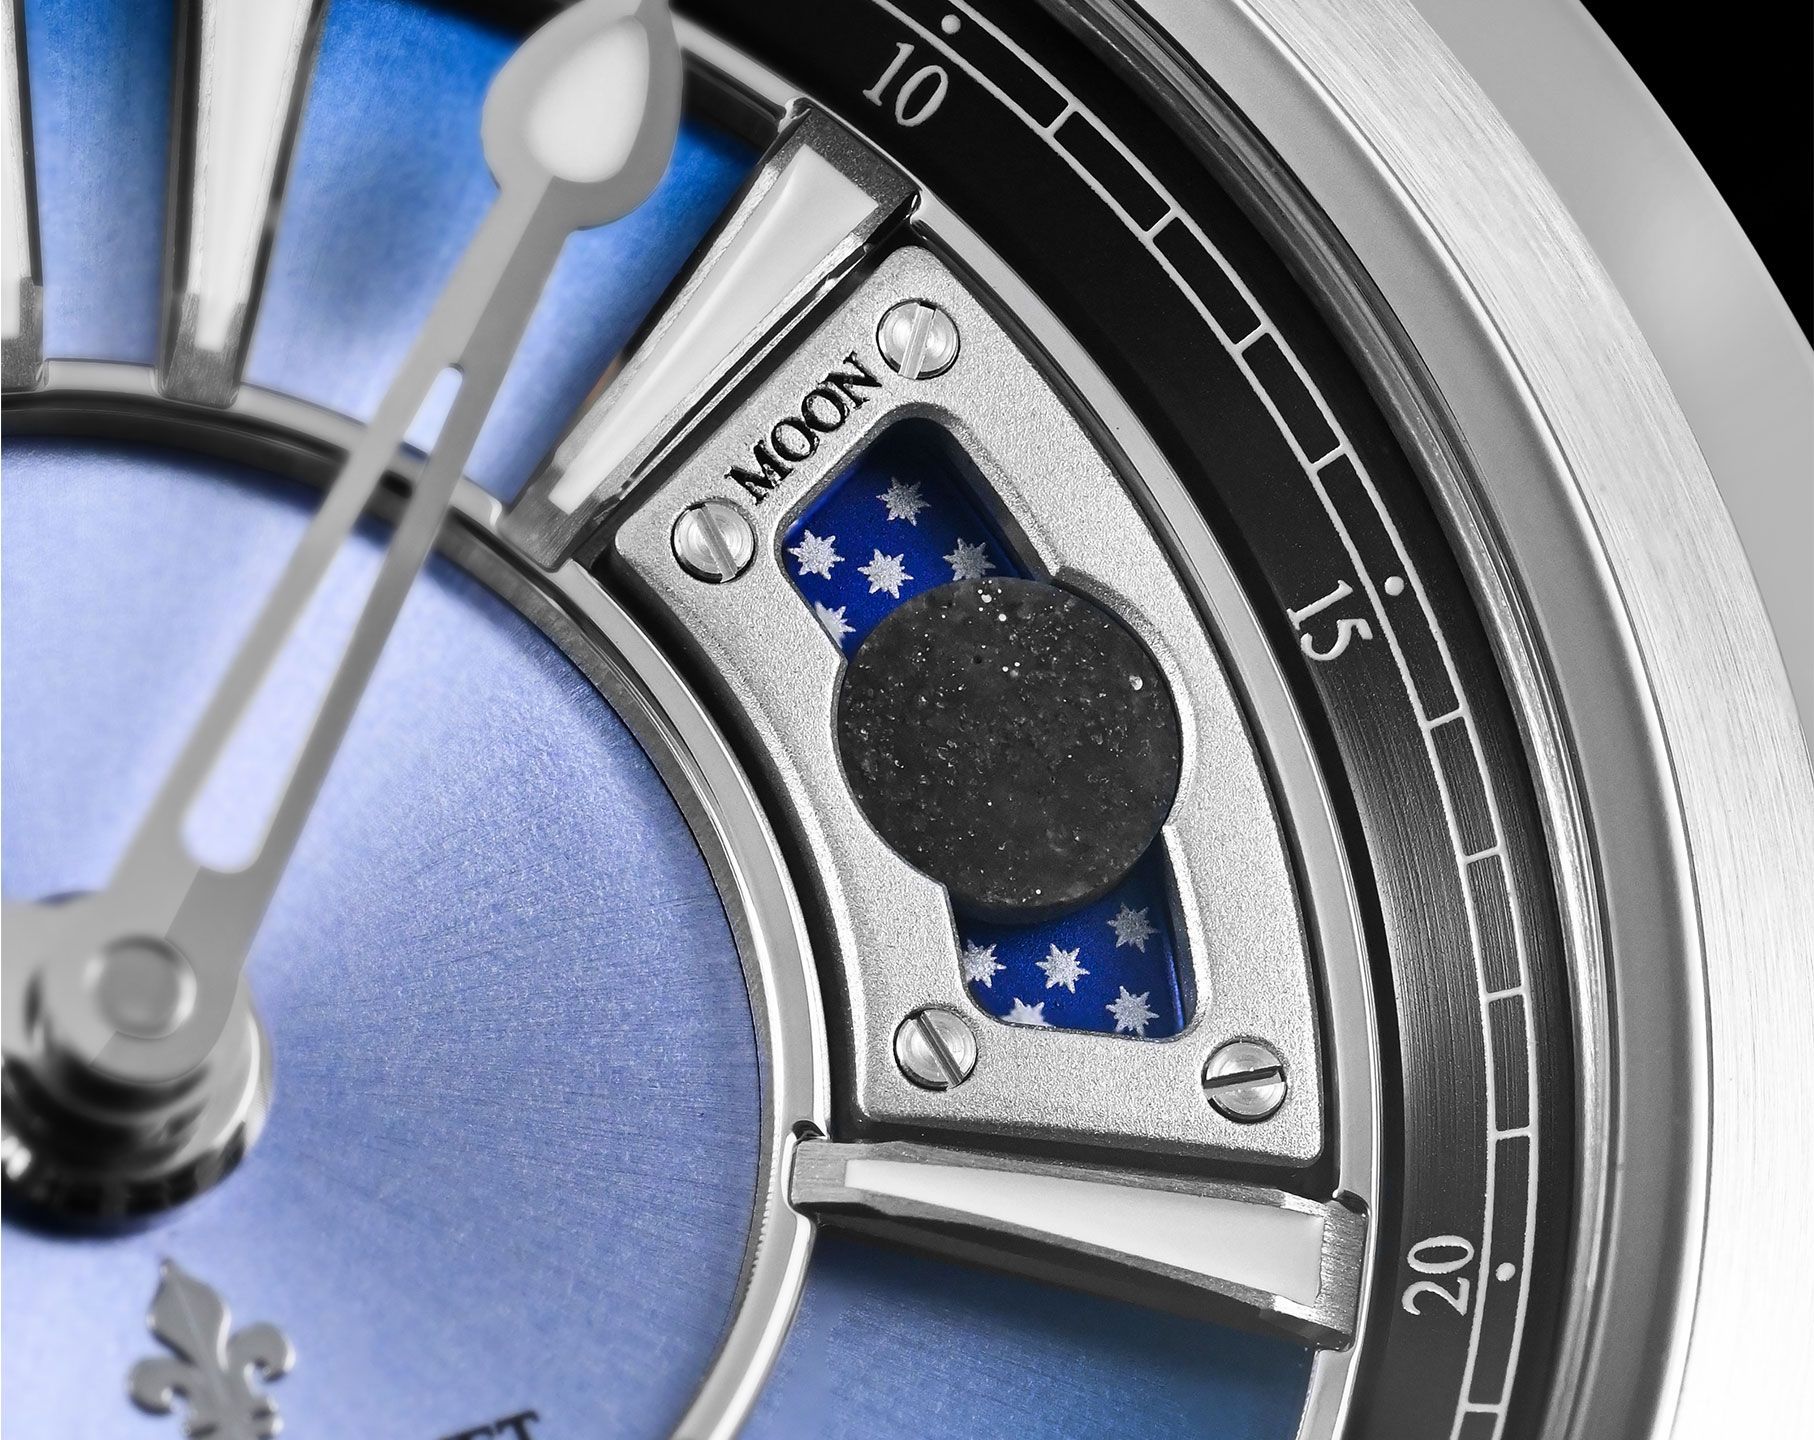 Louis Moinet Moon 45.4 mm Watch in Blue Dial For Men - 3